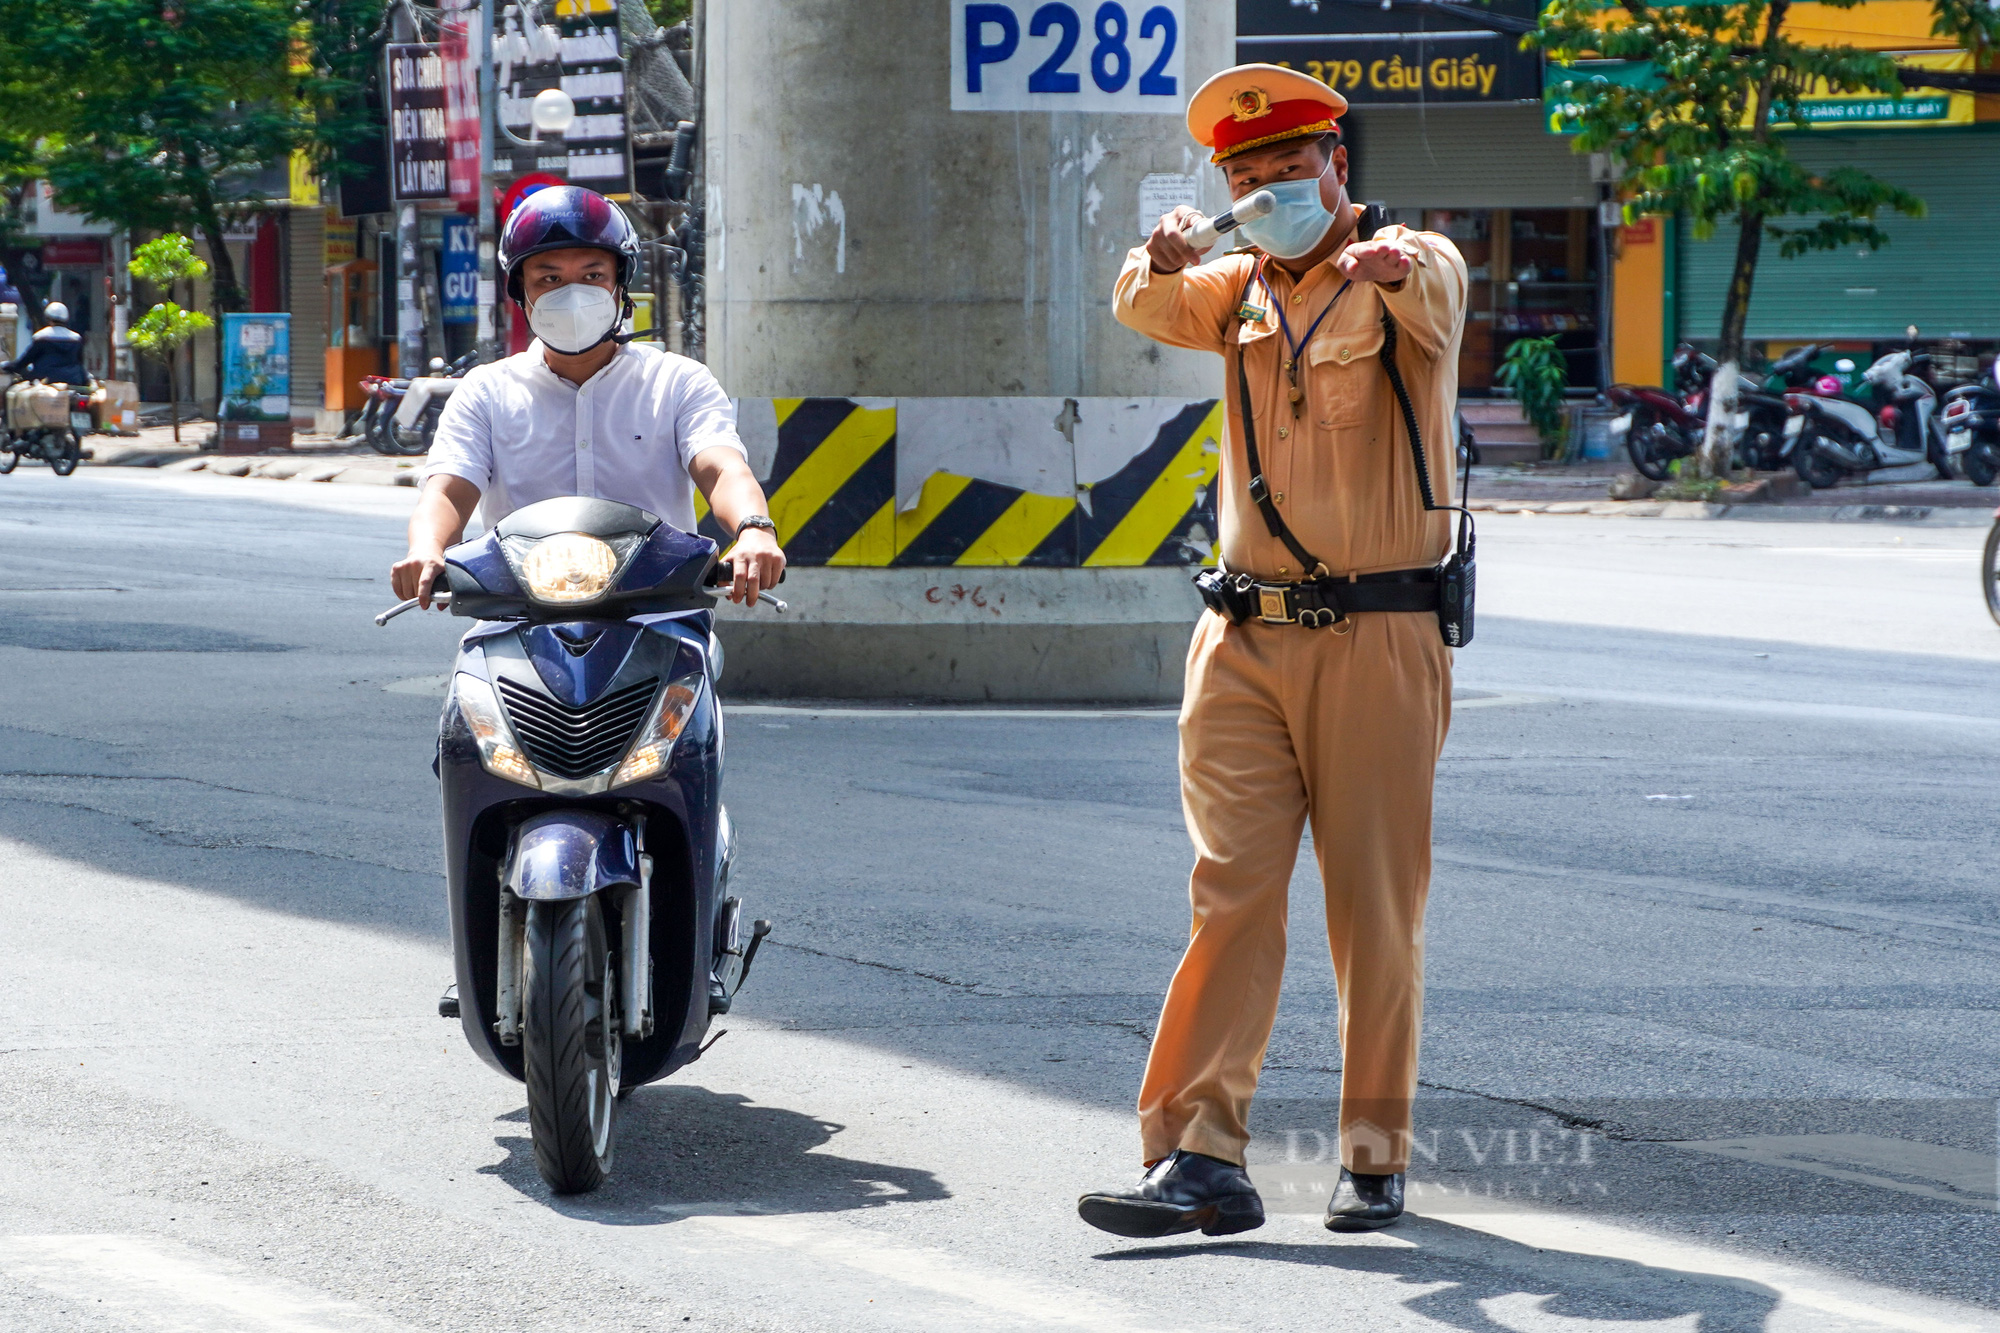 CSGT tuần tra xử lý người vi phạm giao thông, ra đường không lý do trong thời gian giãn cách - Ảnh 2.